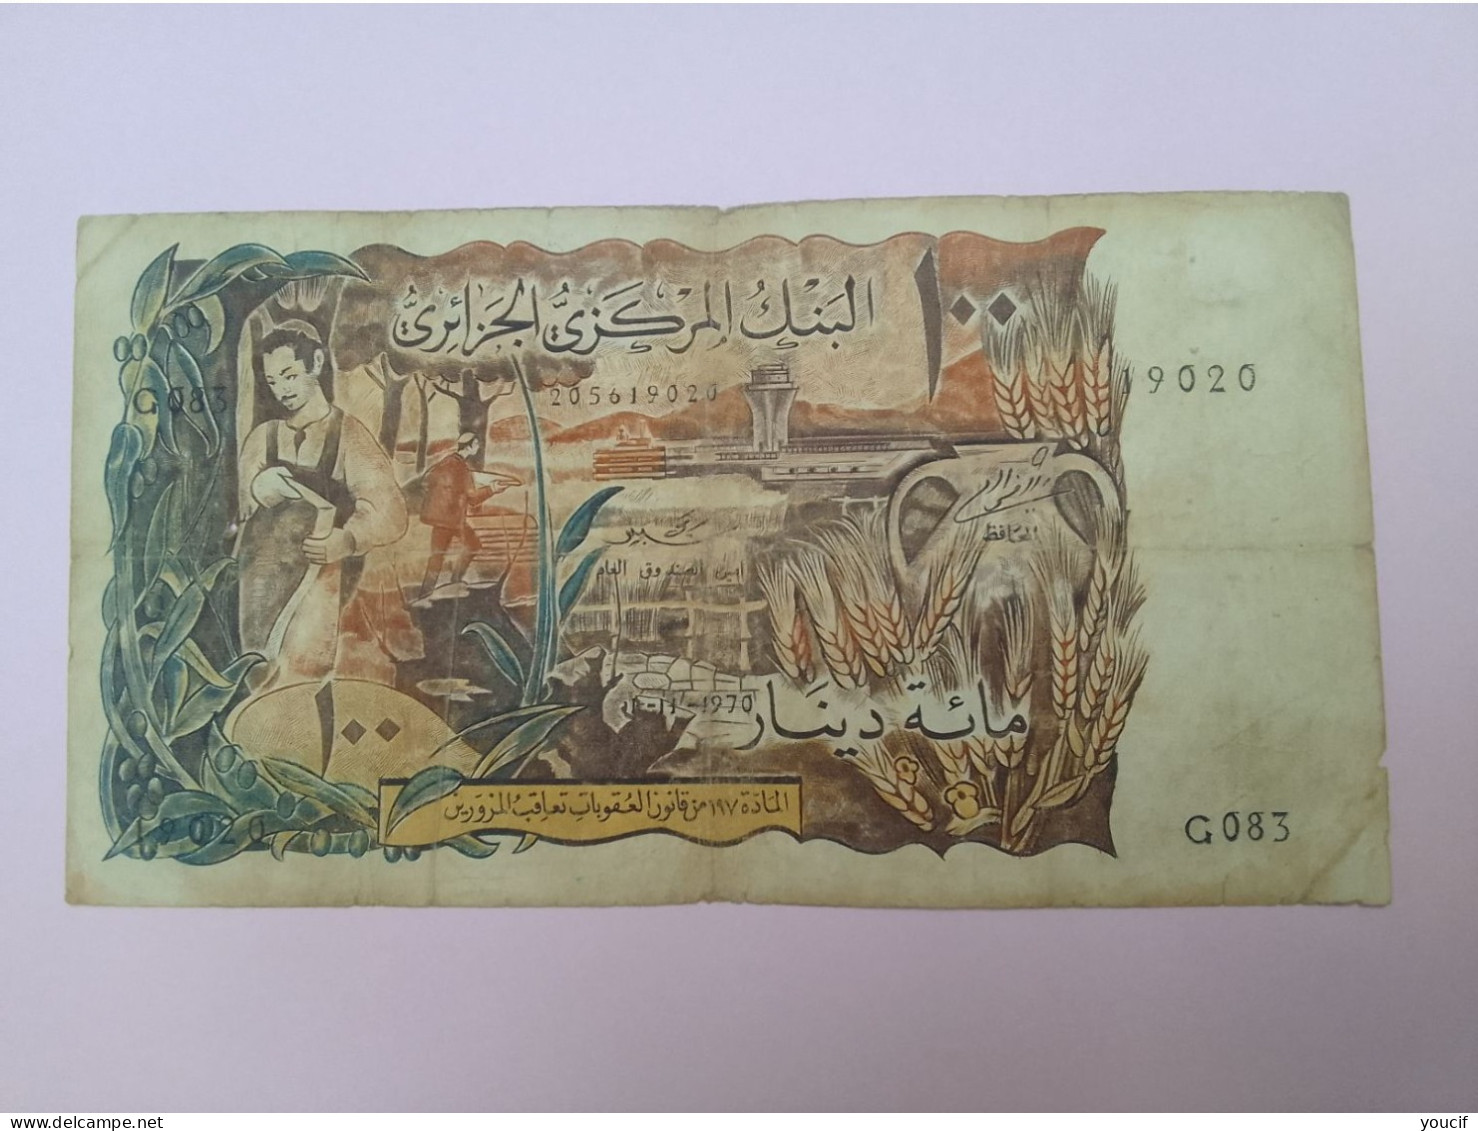 Billet De Banque D Algerie 100 Dinars 01 Novembre 1970 - Algérie